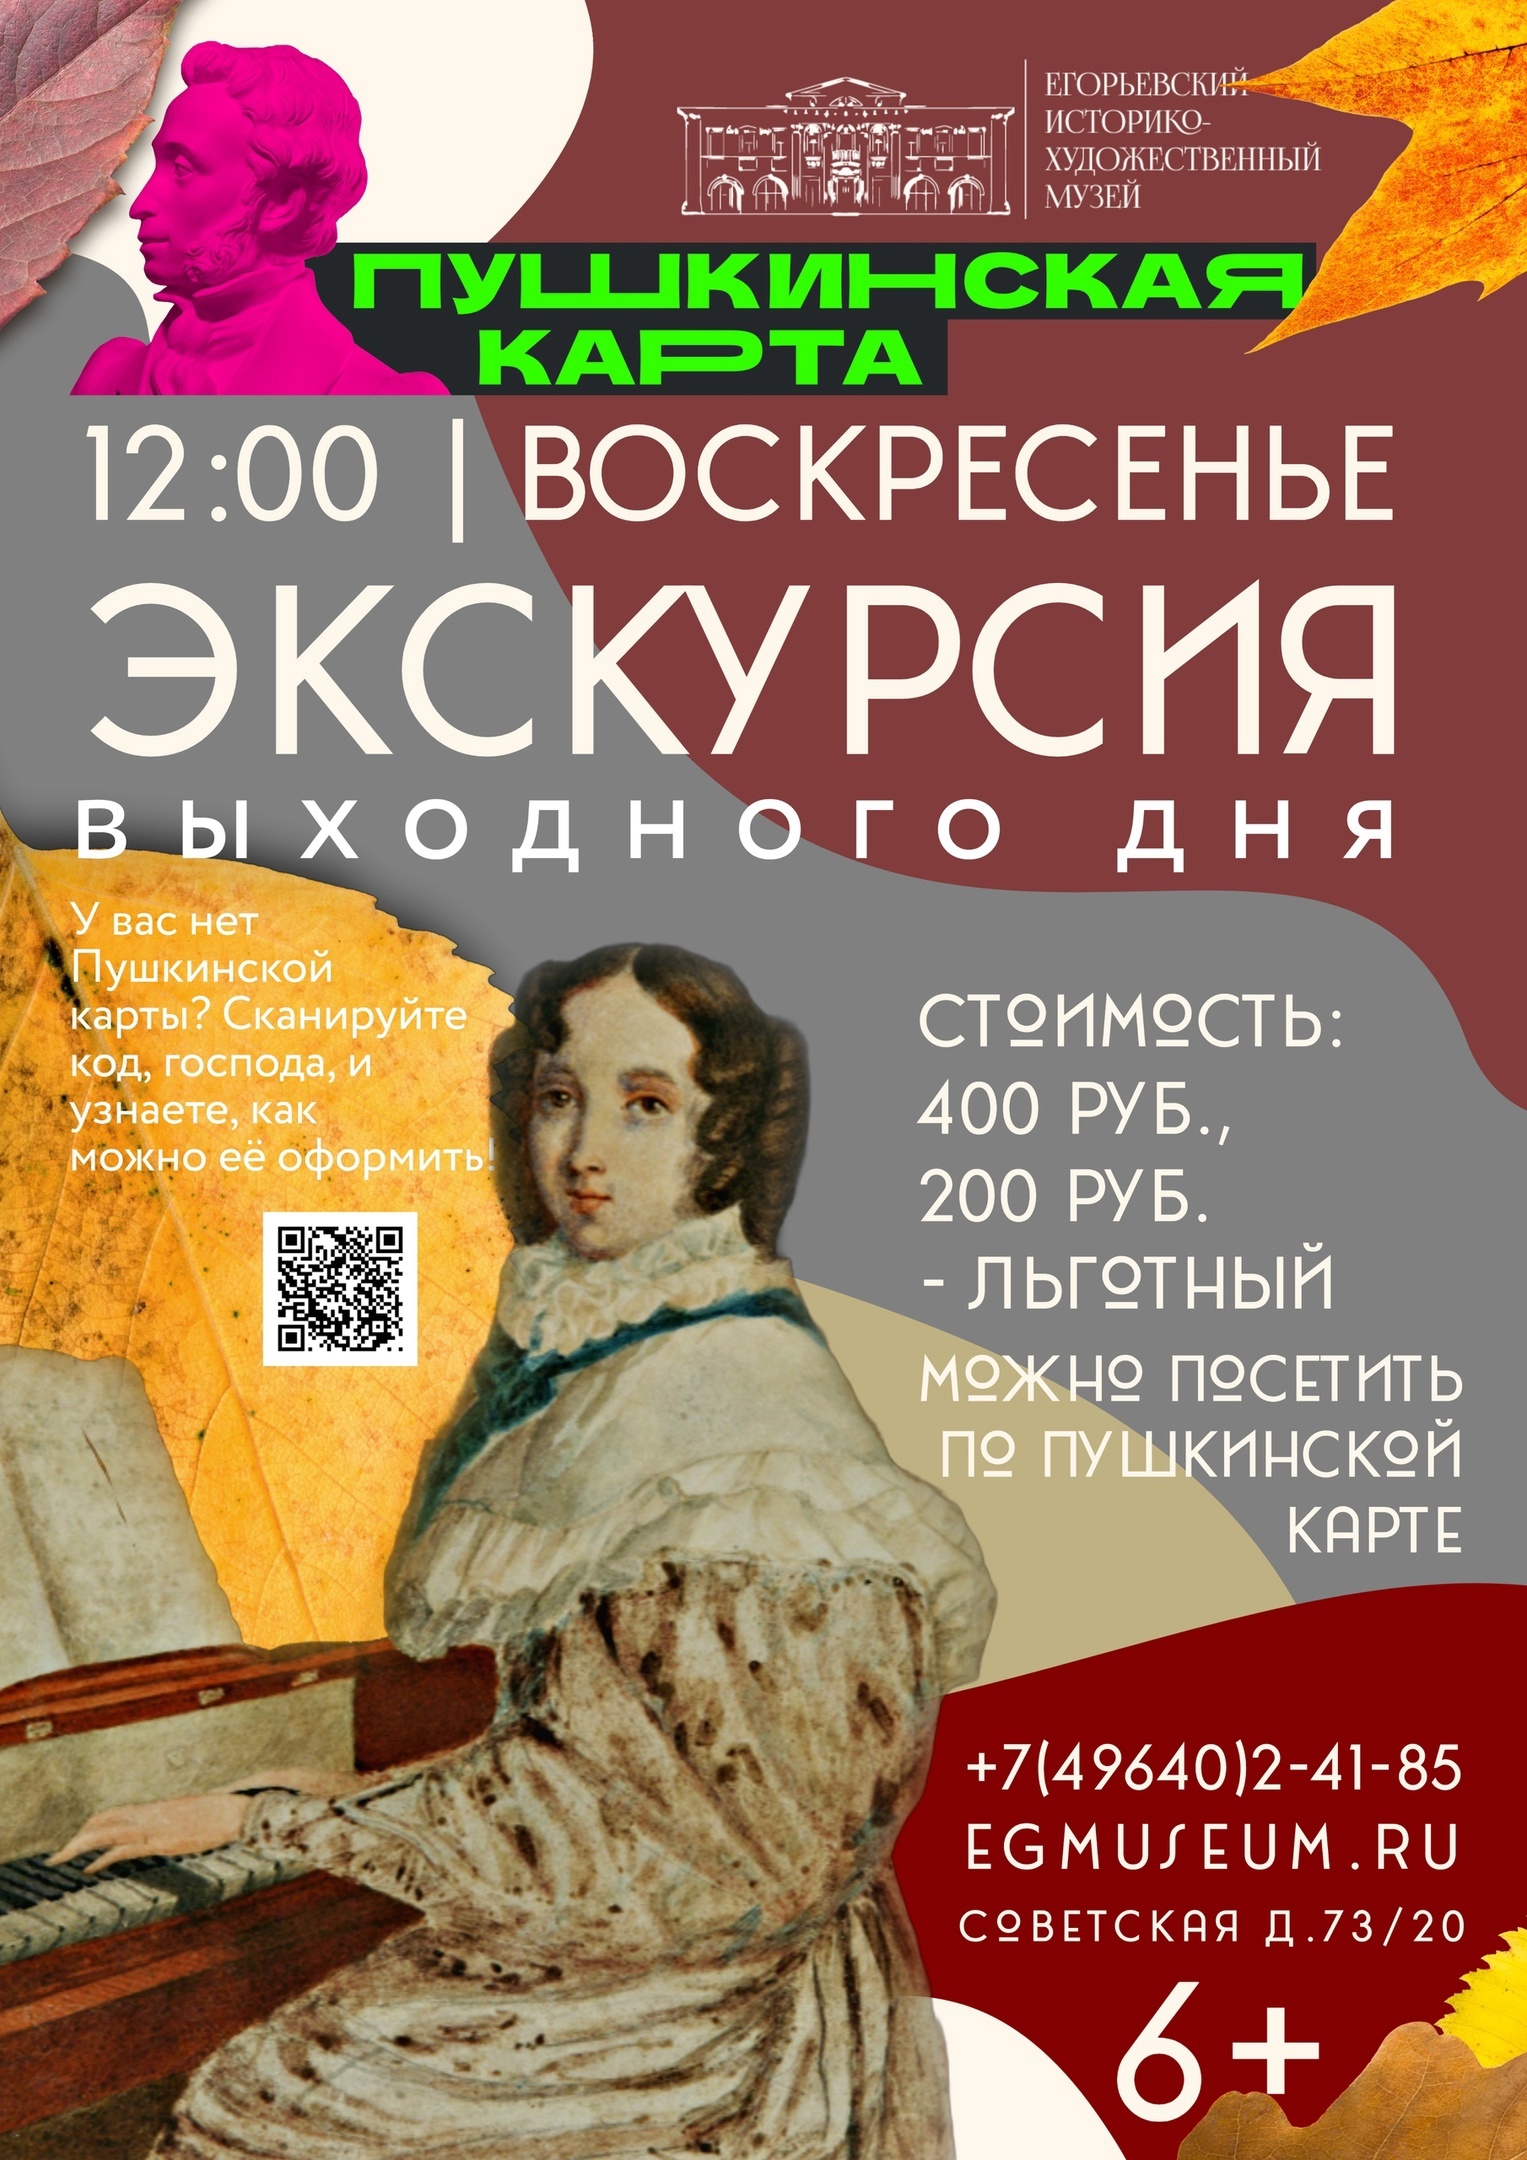 Экскурсии выходного дня в Егорьевском музее